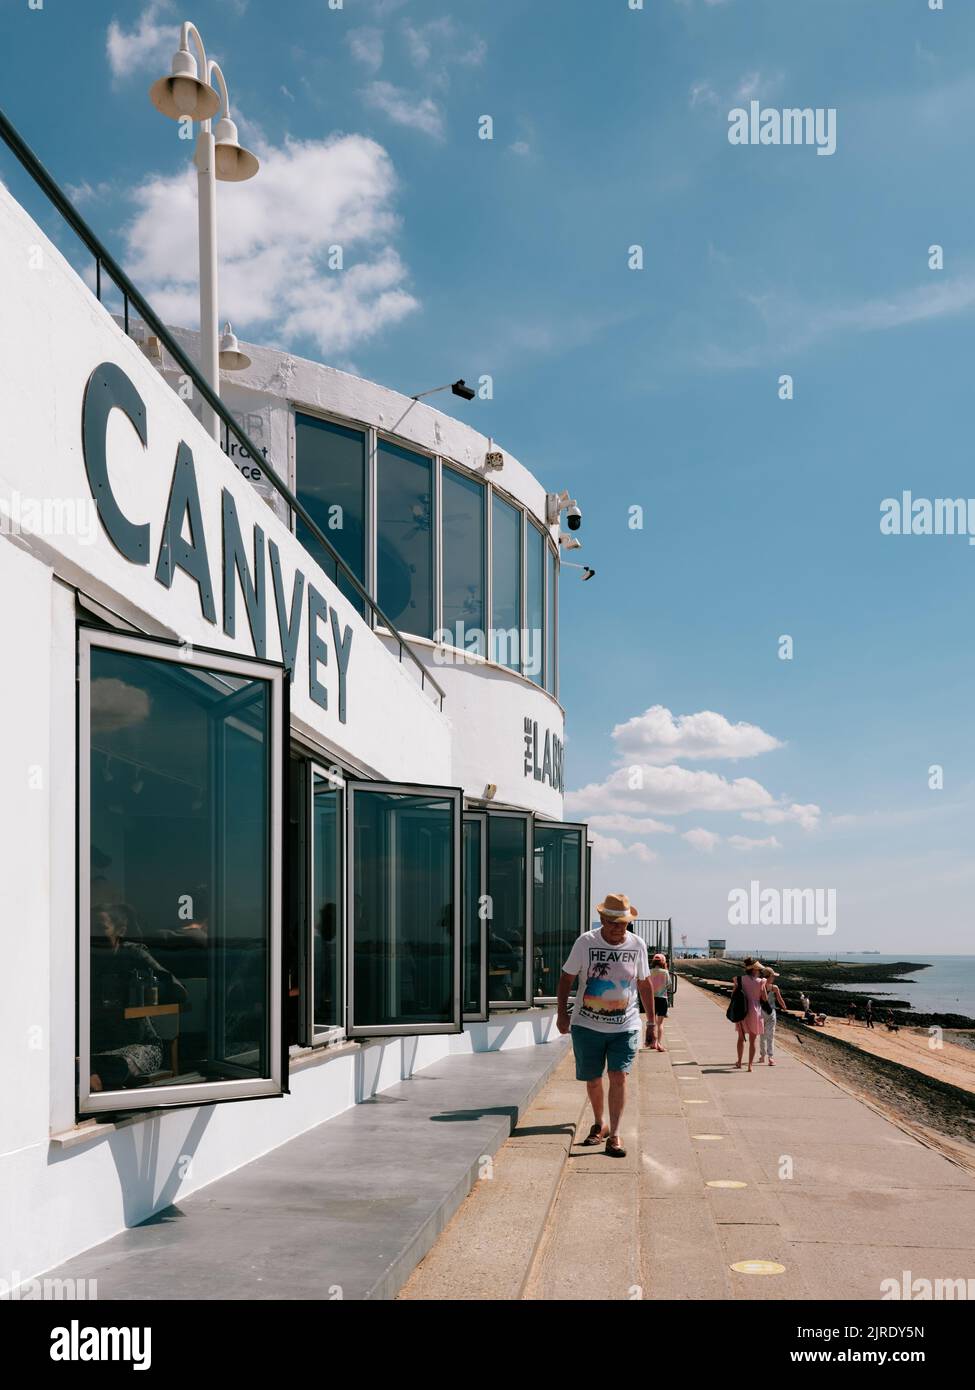 Die modernistische Betonarchitektur am Meer des Labworth Cafe an der Küste von Canvey Island, Thames Estuary, Essex, England, Großbritannien - Sommerleben Stockfoto